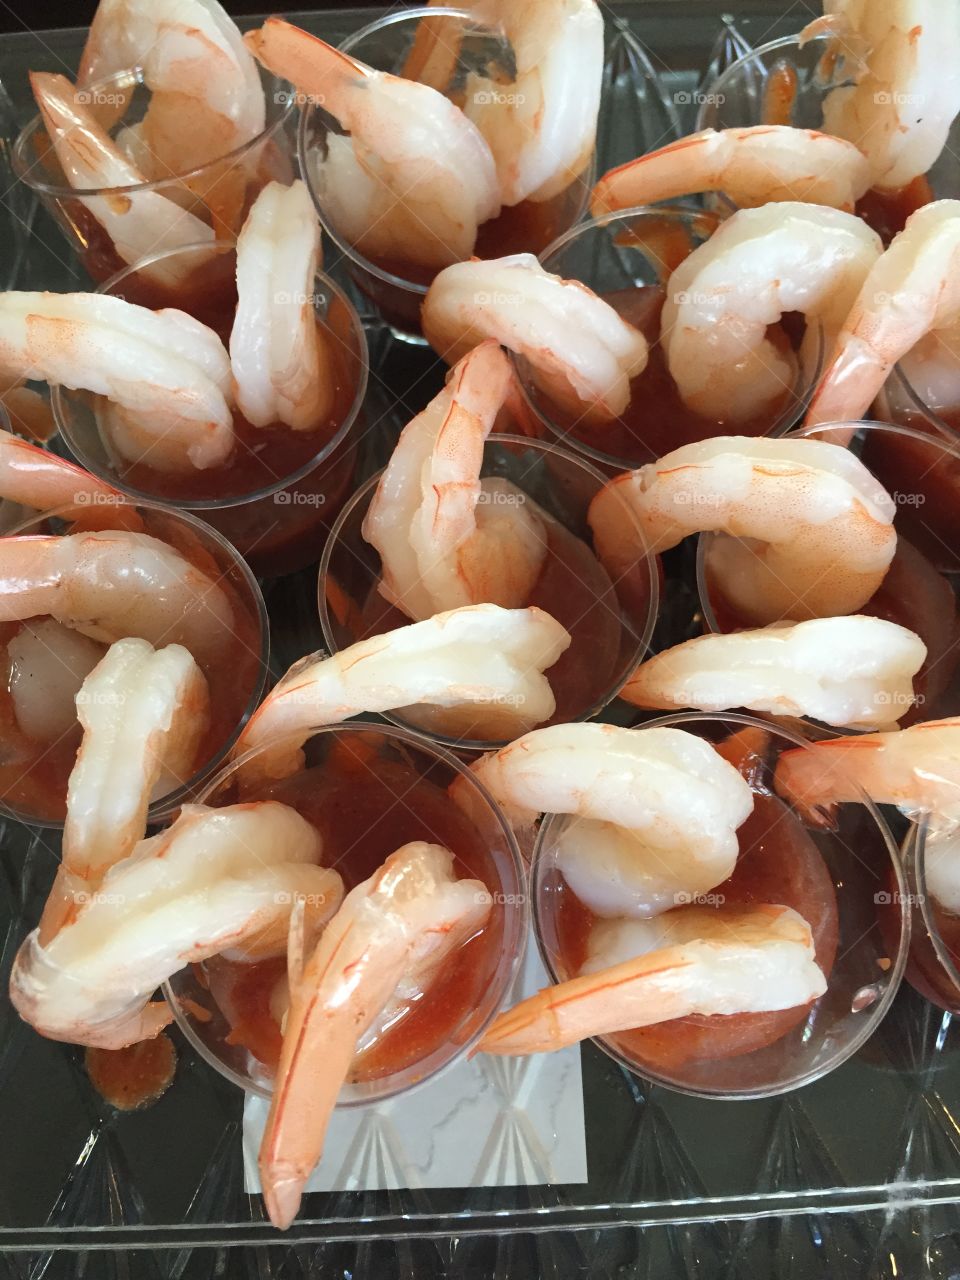 Shrimp cocktail. Mini shrimp cocktail appetizers for bridal shower